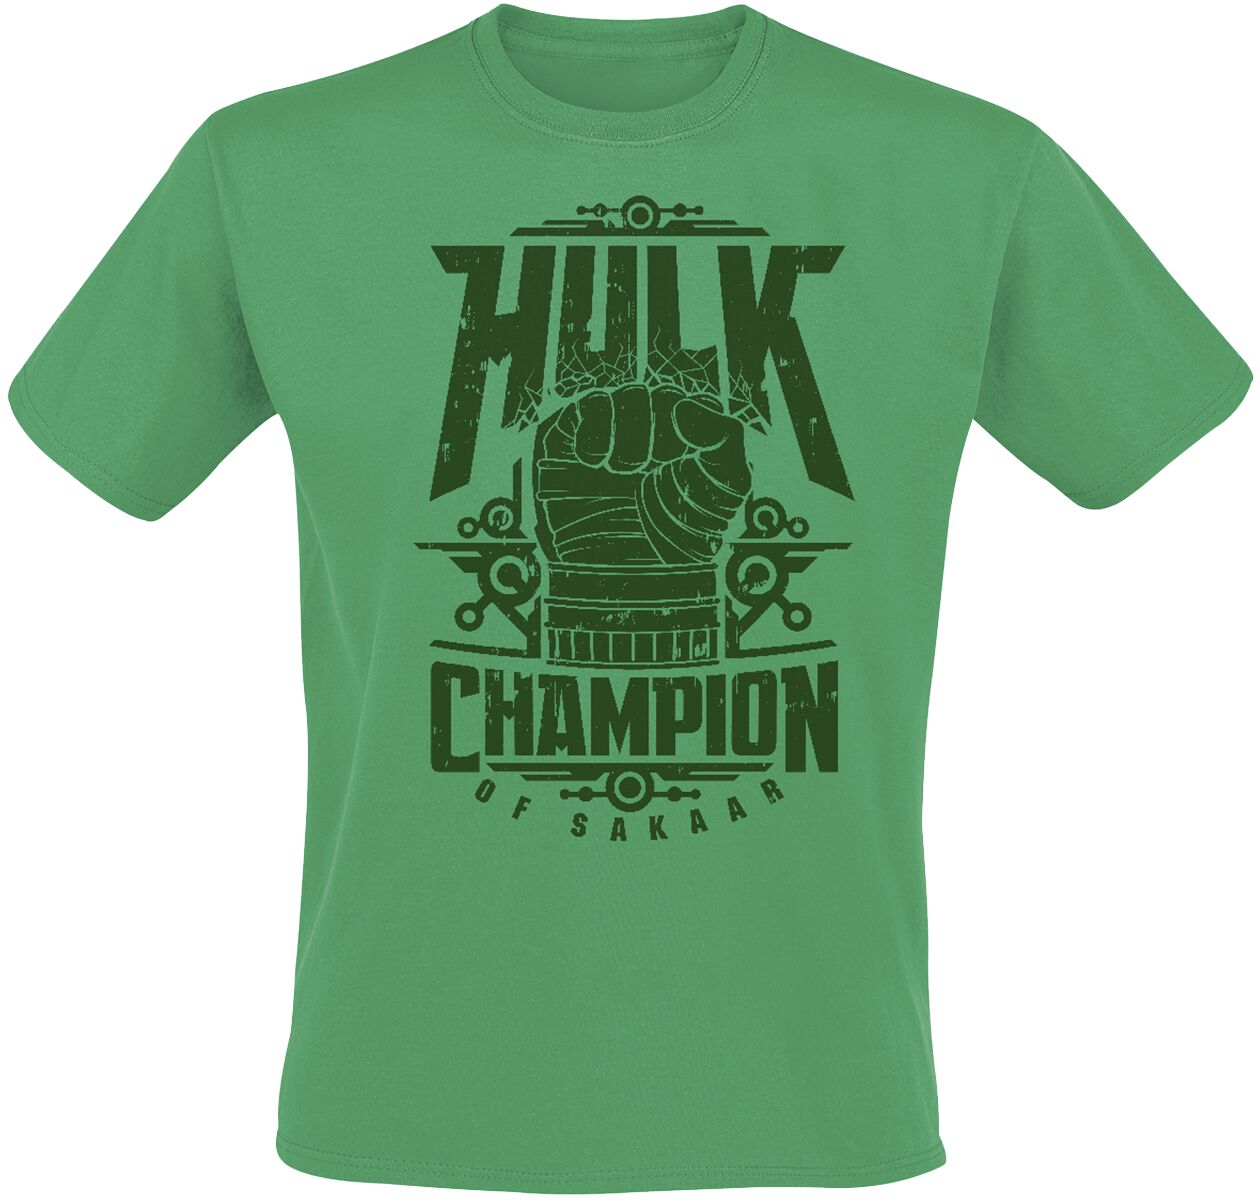 Hulk Champion Of Sakaar T-Shirt green